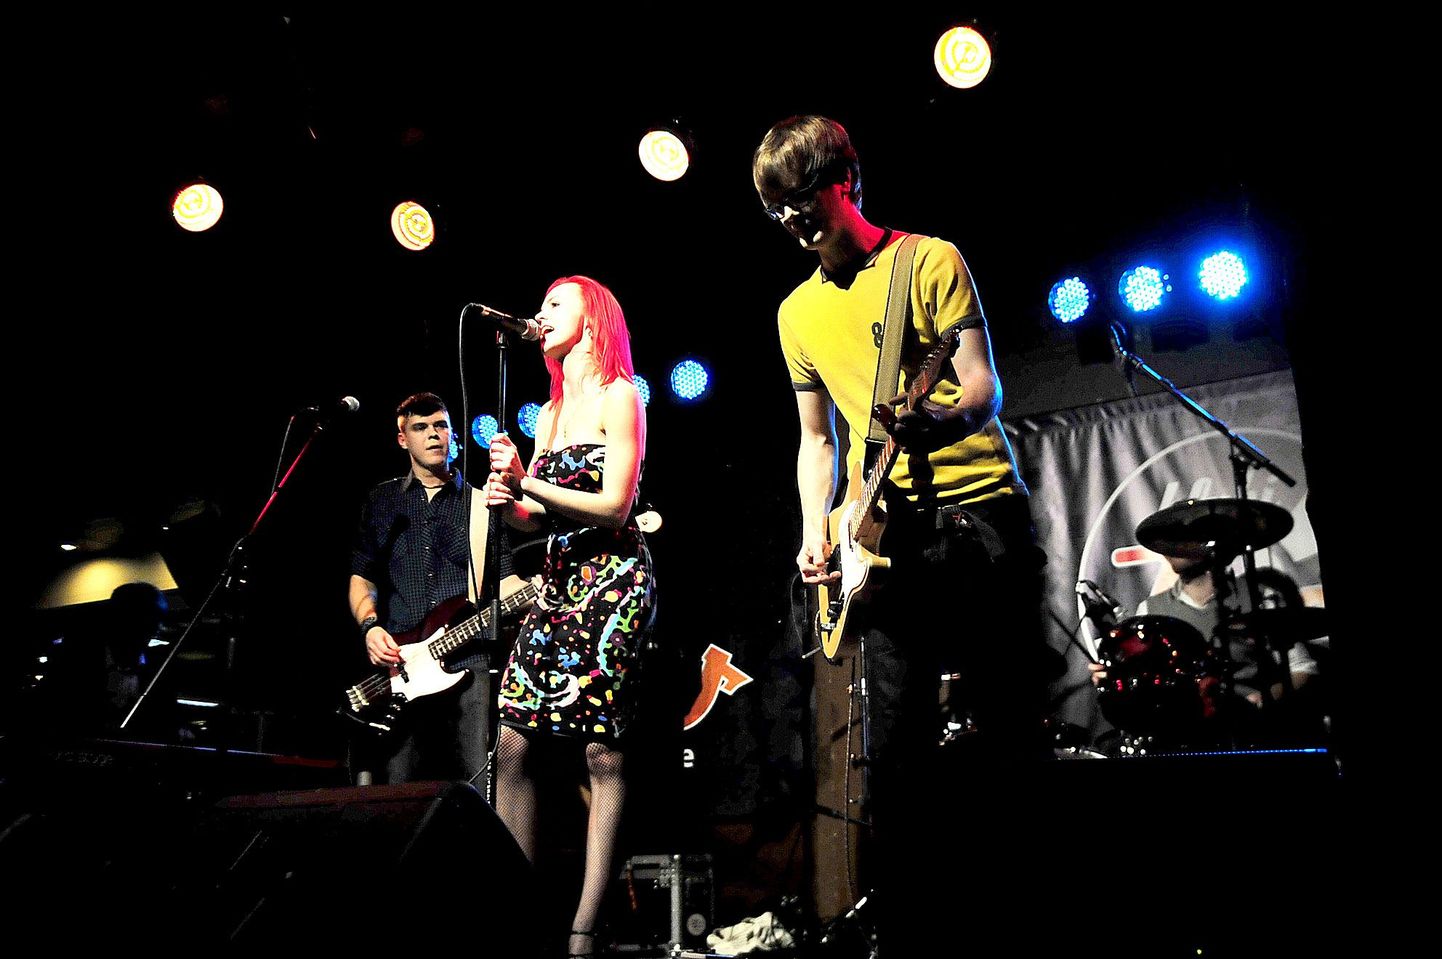 Ansambel Loss Paranoias andis singli ja video  valmimise puhul  esitluskontserdi 8. detsembril  klubis Trehv.